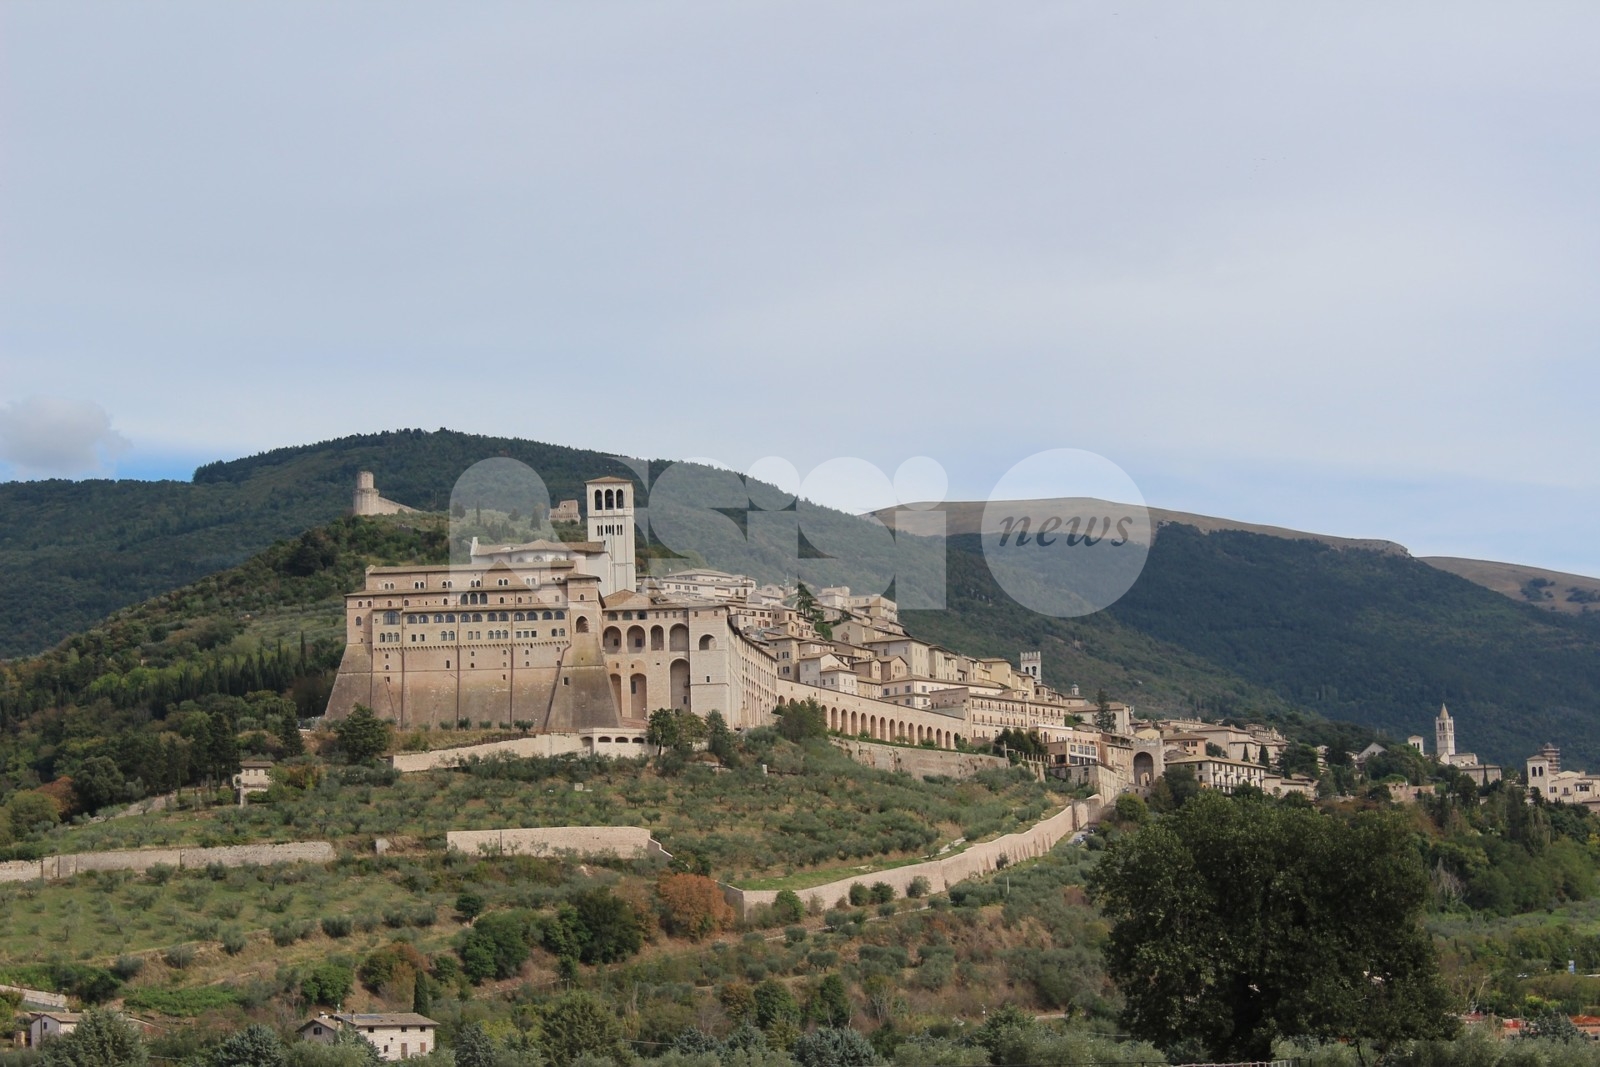 Amministrative Assisi 2021: ecco i nomi, ma ci sarà progettualità per città e territorio?